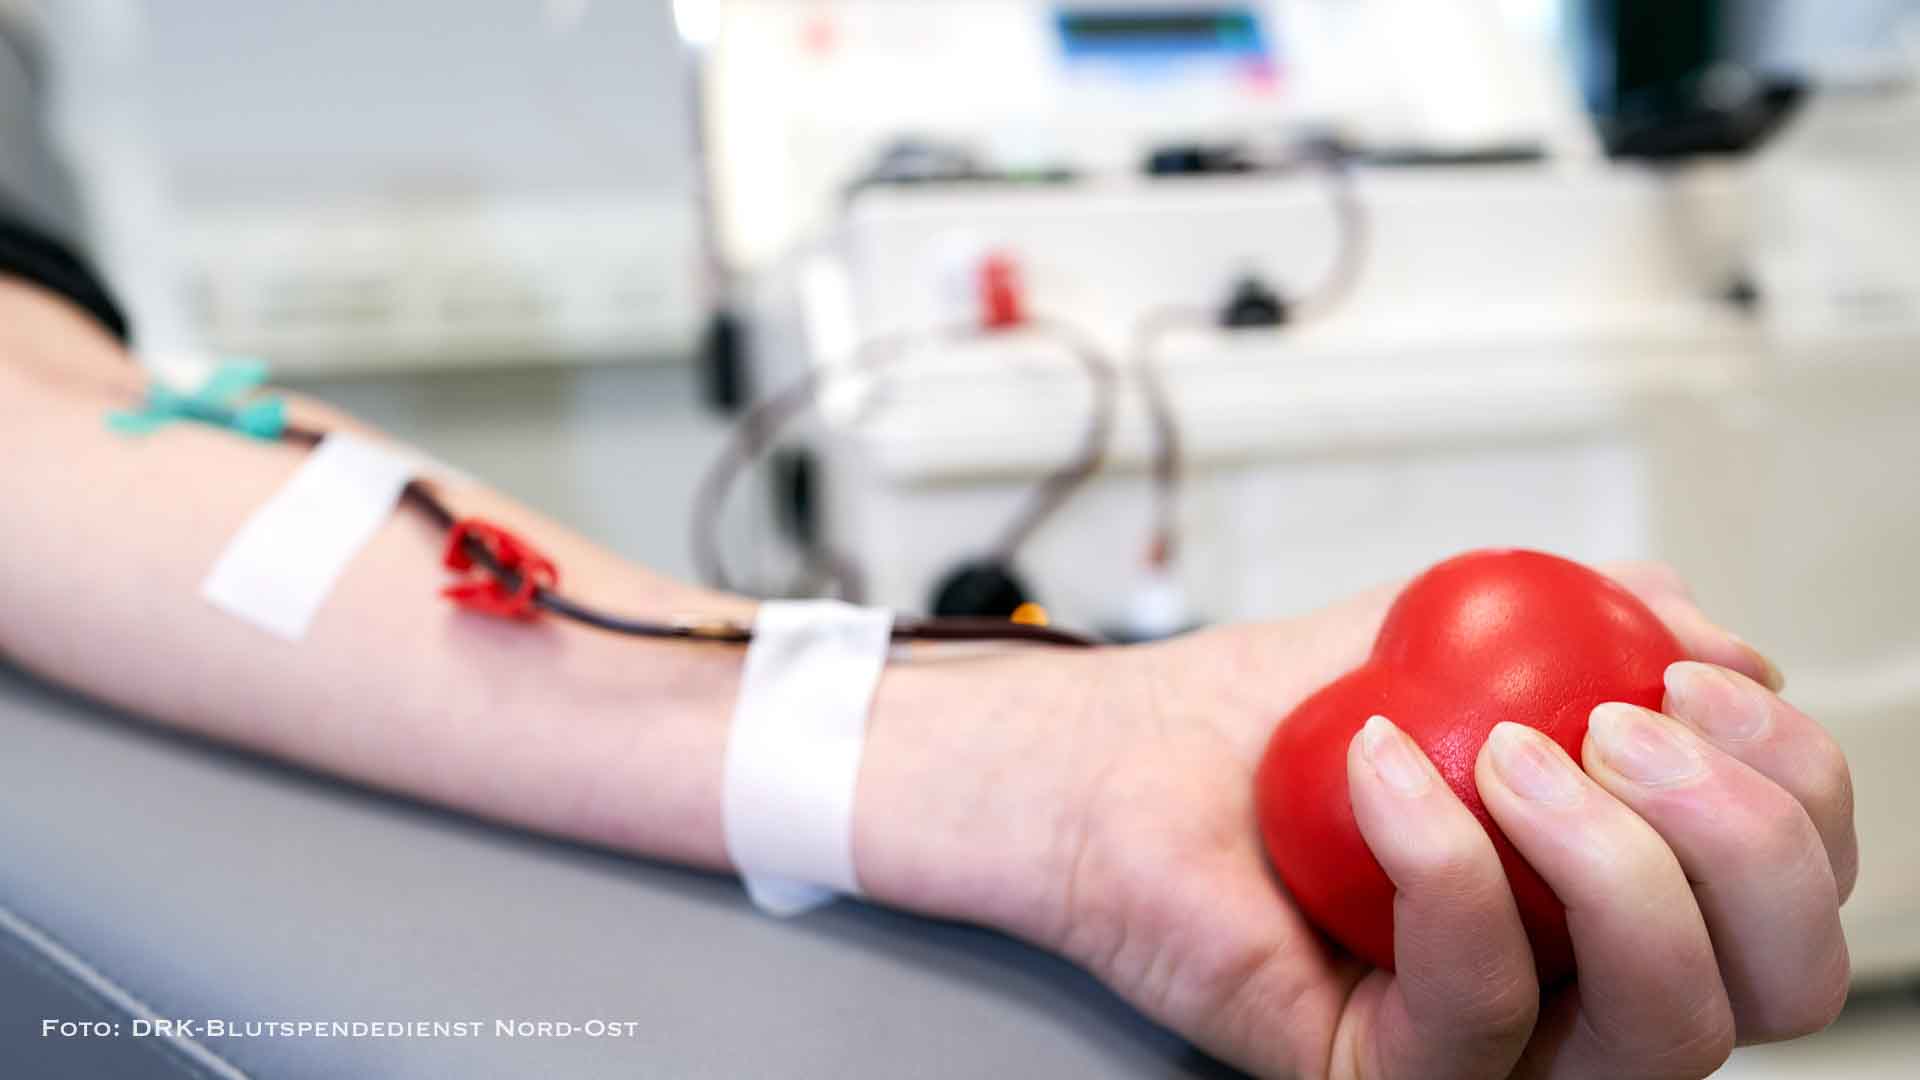 Knappe Blutreserven - Aufruf zum Blutspenden in Brandenburg